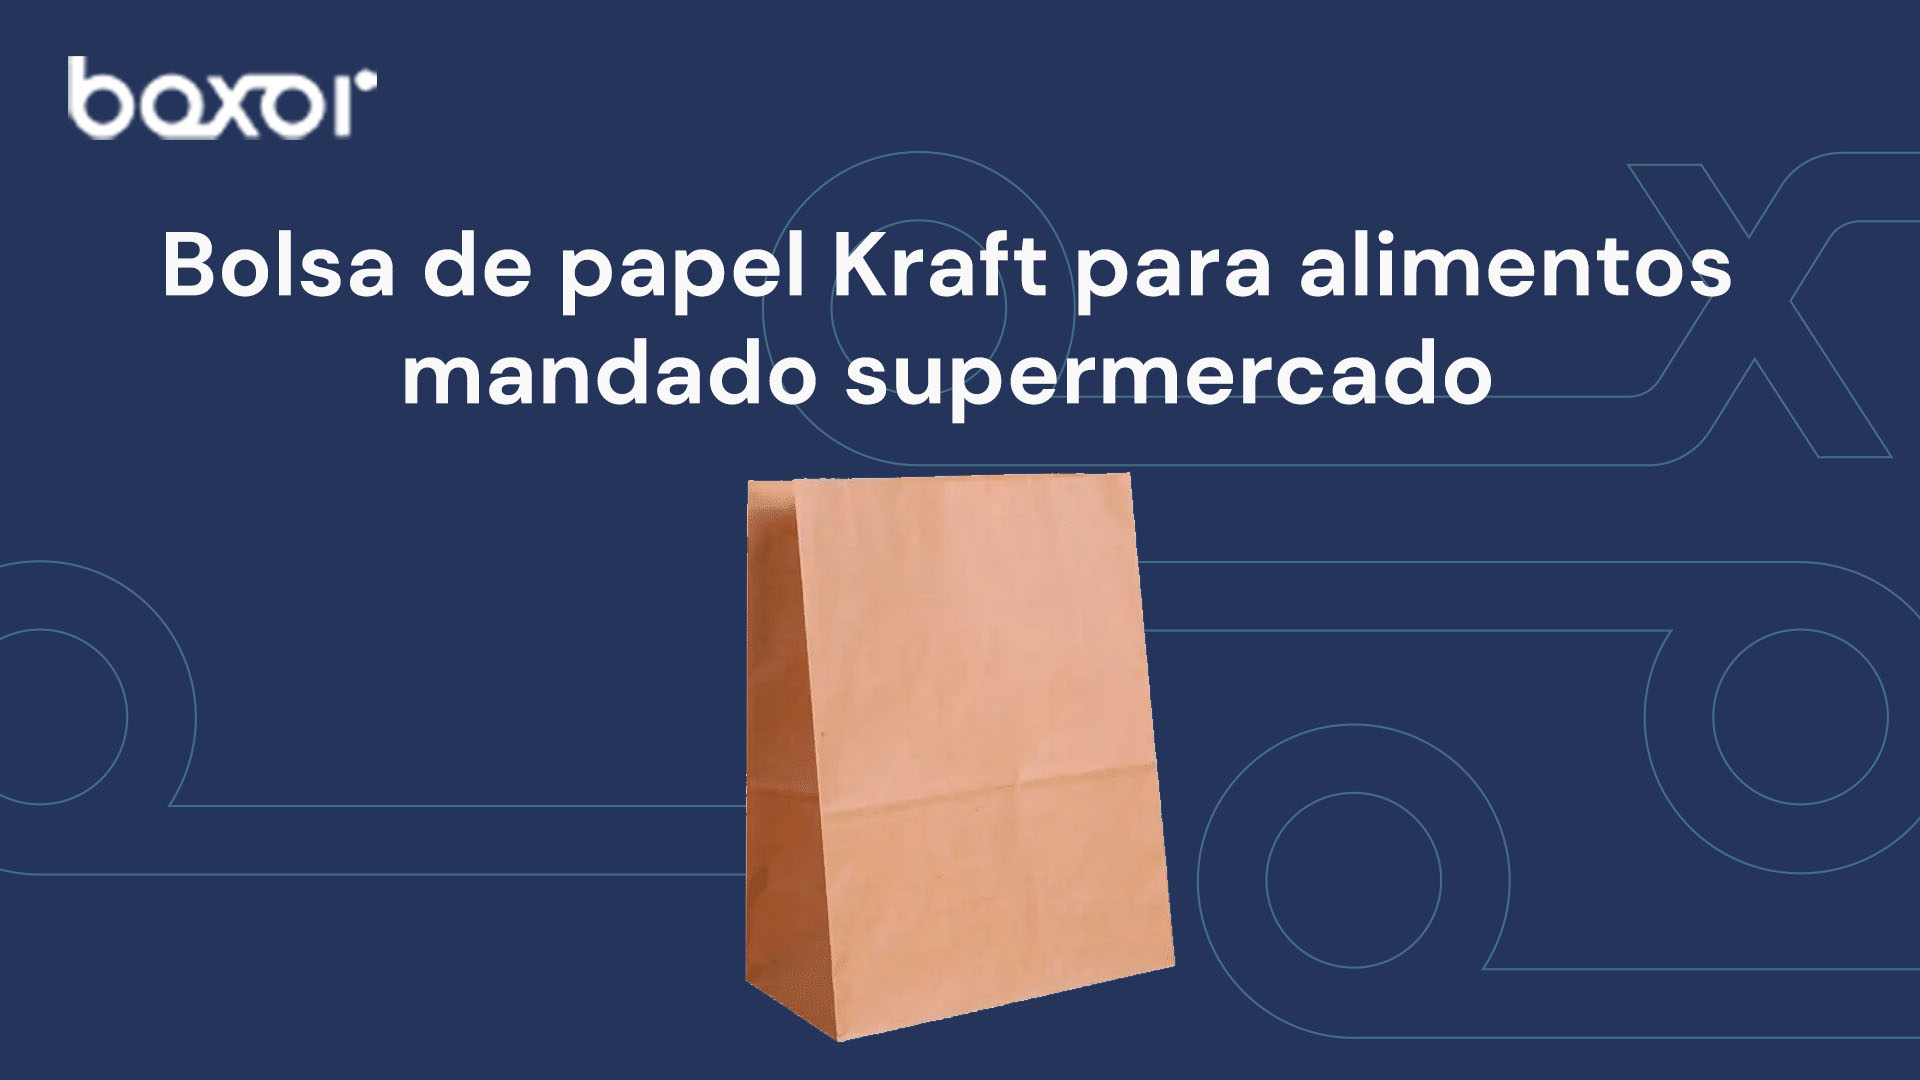  Bolsa de papel Kraft para alimentos mandado supermercado